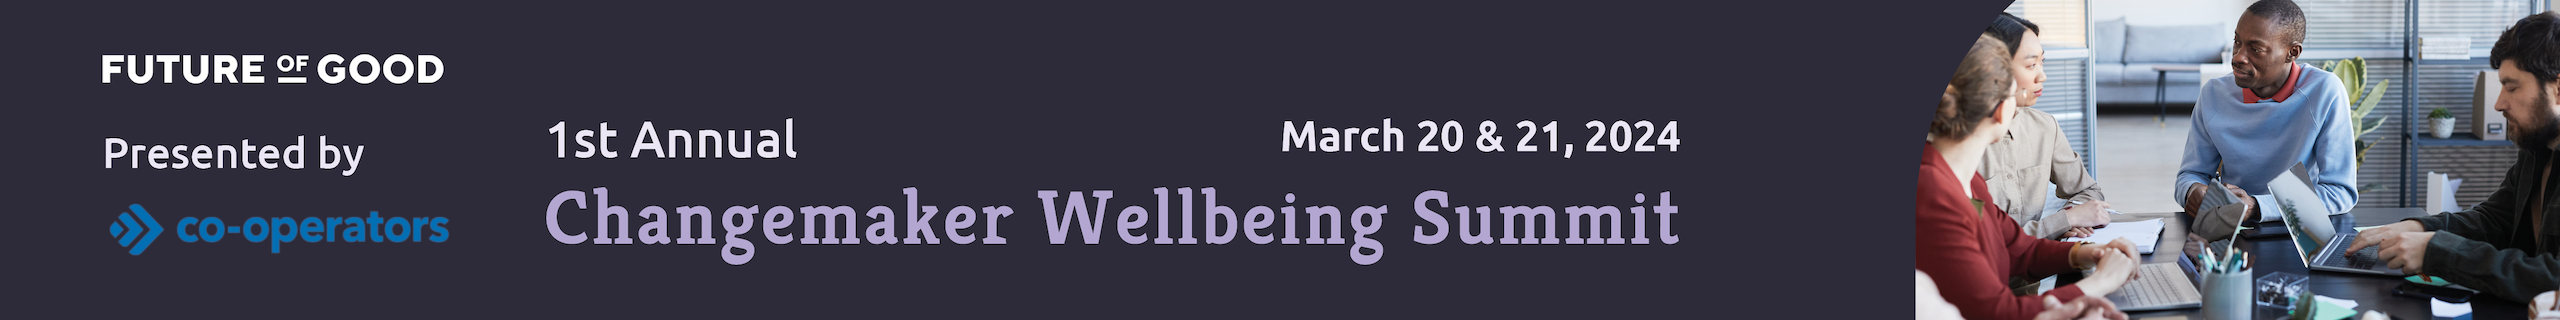 Wellbeing Summit 2024 Banner